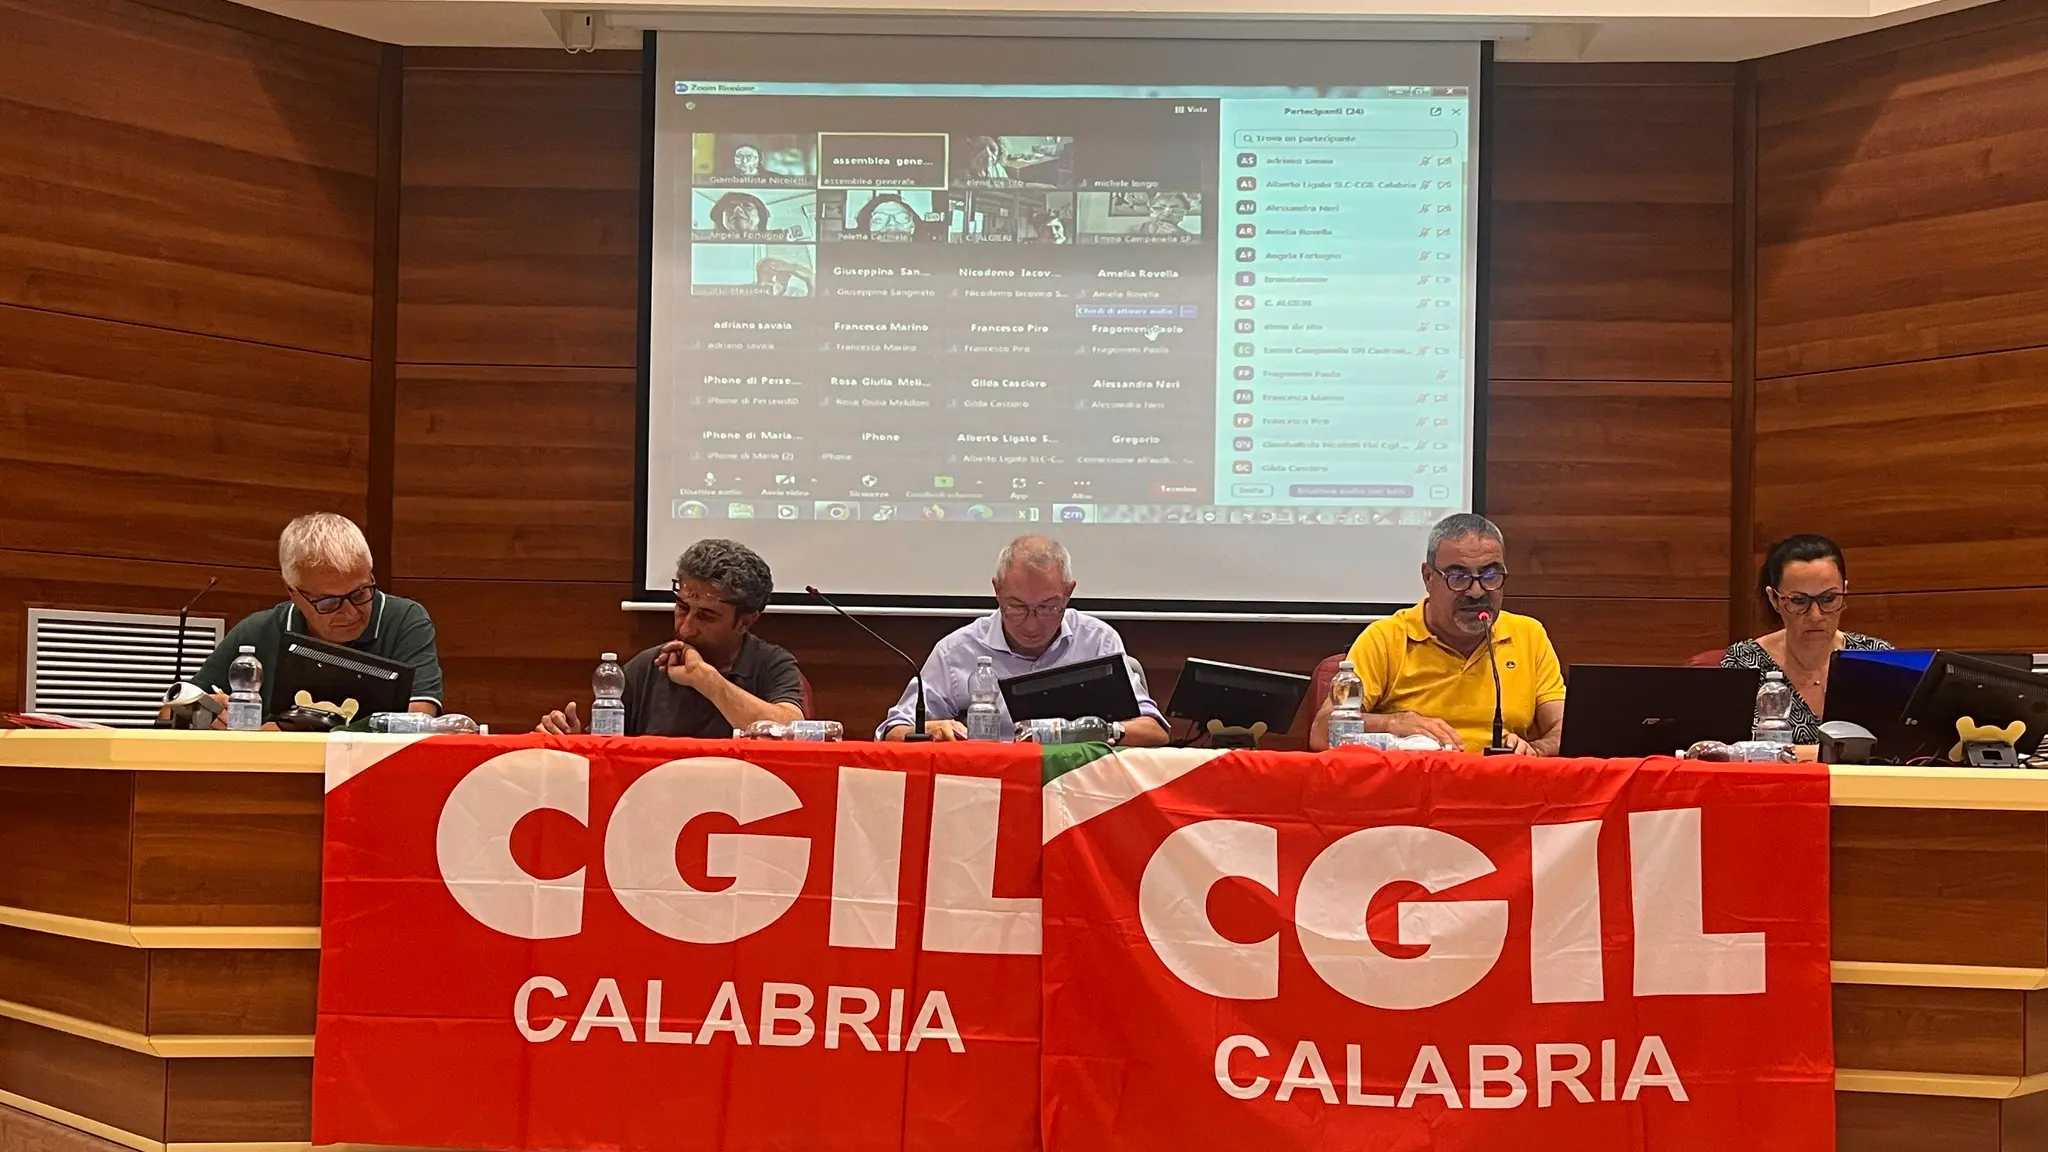 Assemblea Cgil Calabria: ora le firme contro l’autonomia